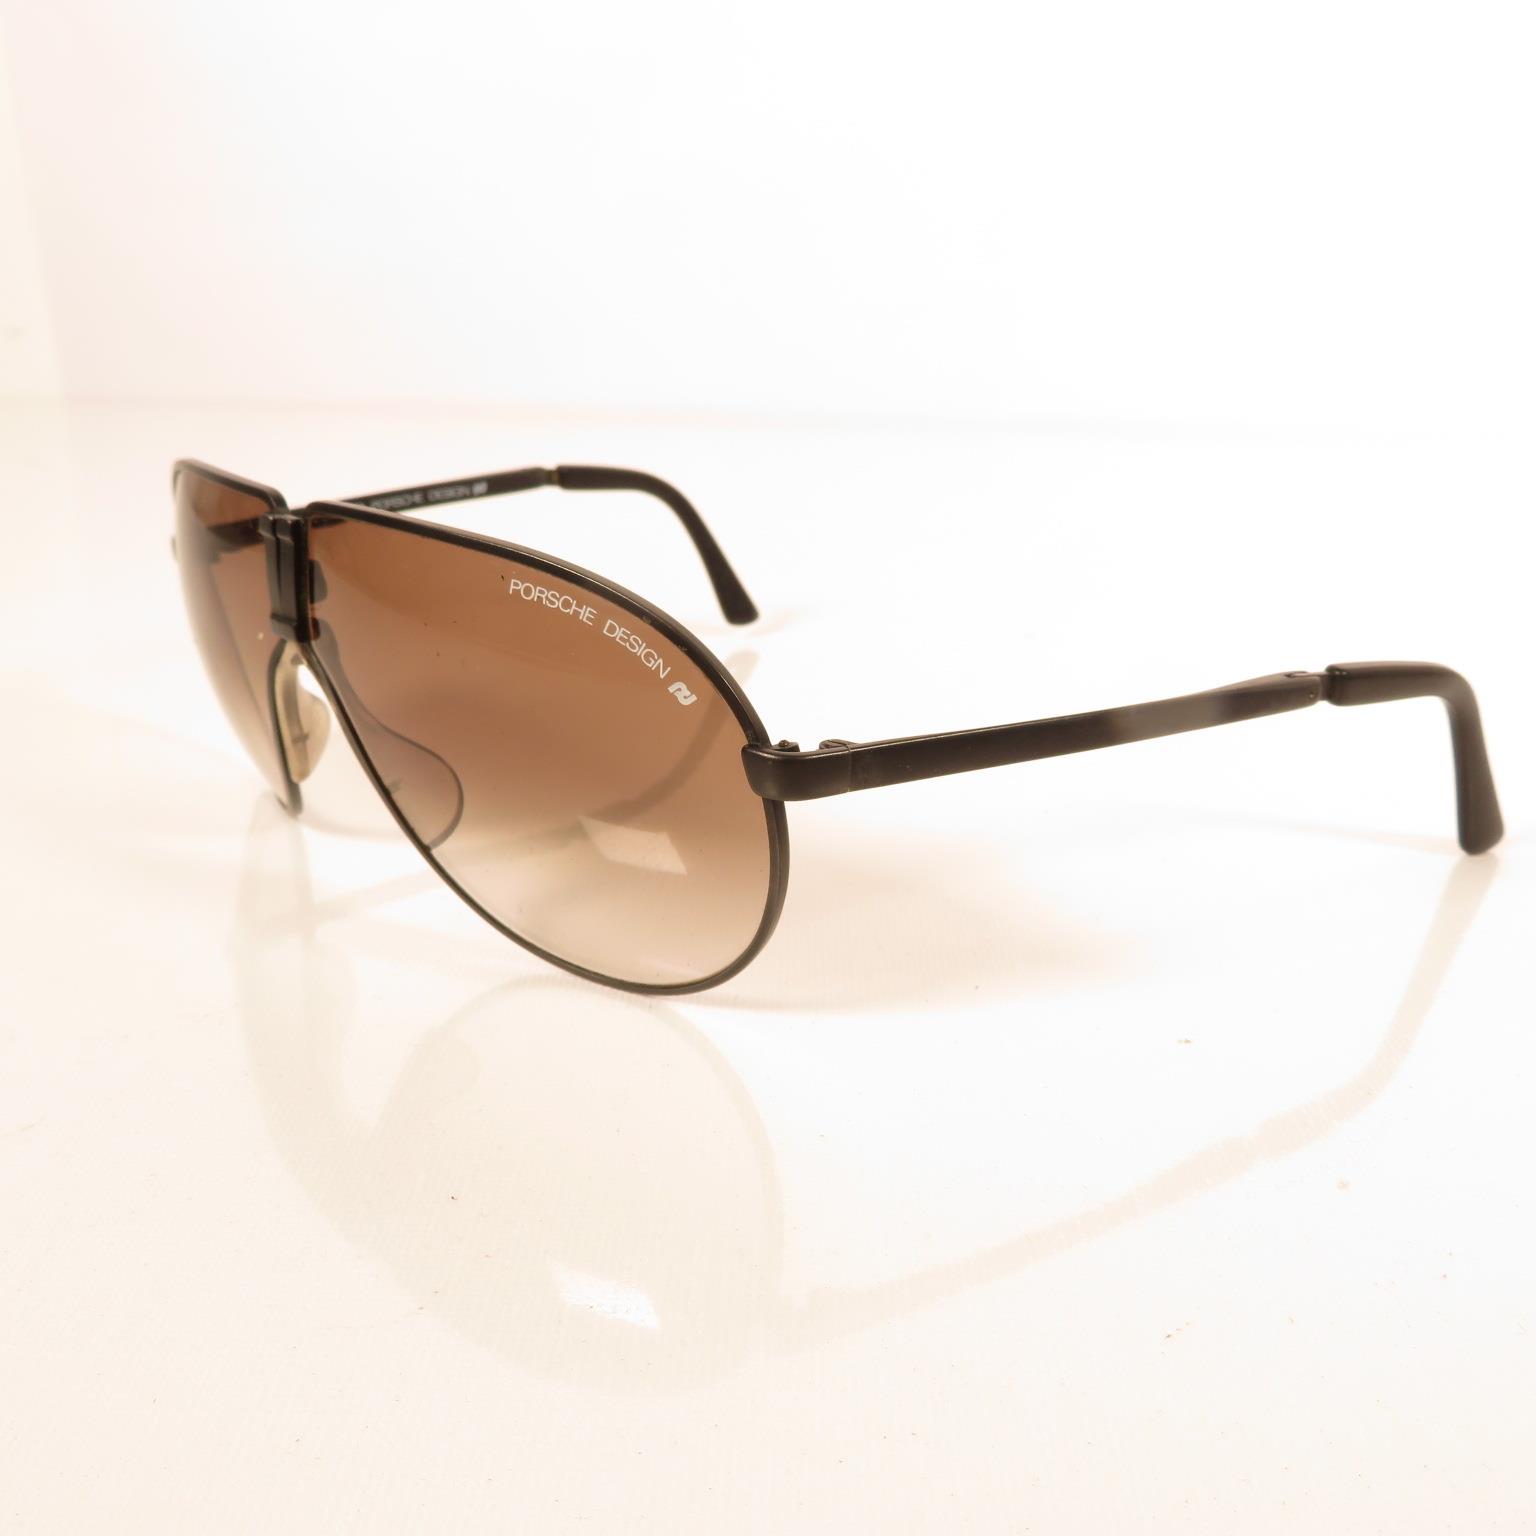 Pair of Porsche Folding Sunglasses, Per Sol folding Sunglasses, Oakley sunglasses and Porsche design - Bild 15 aus 17